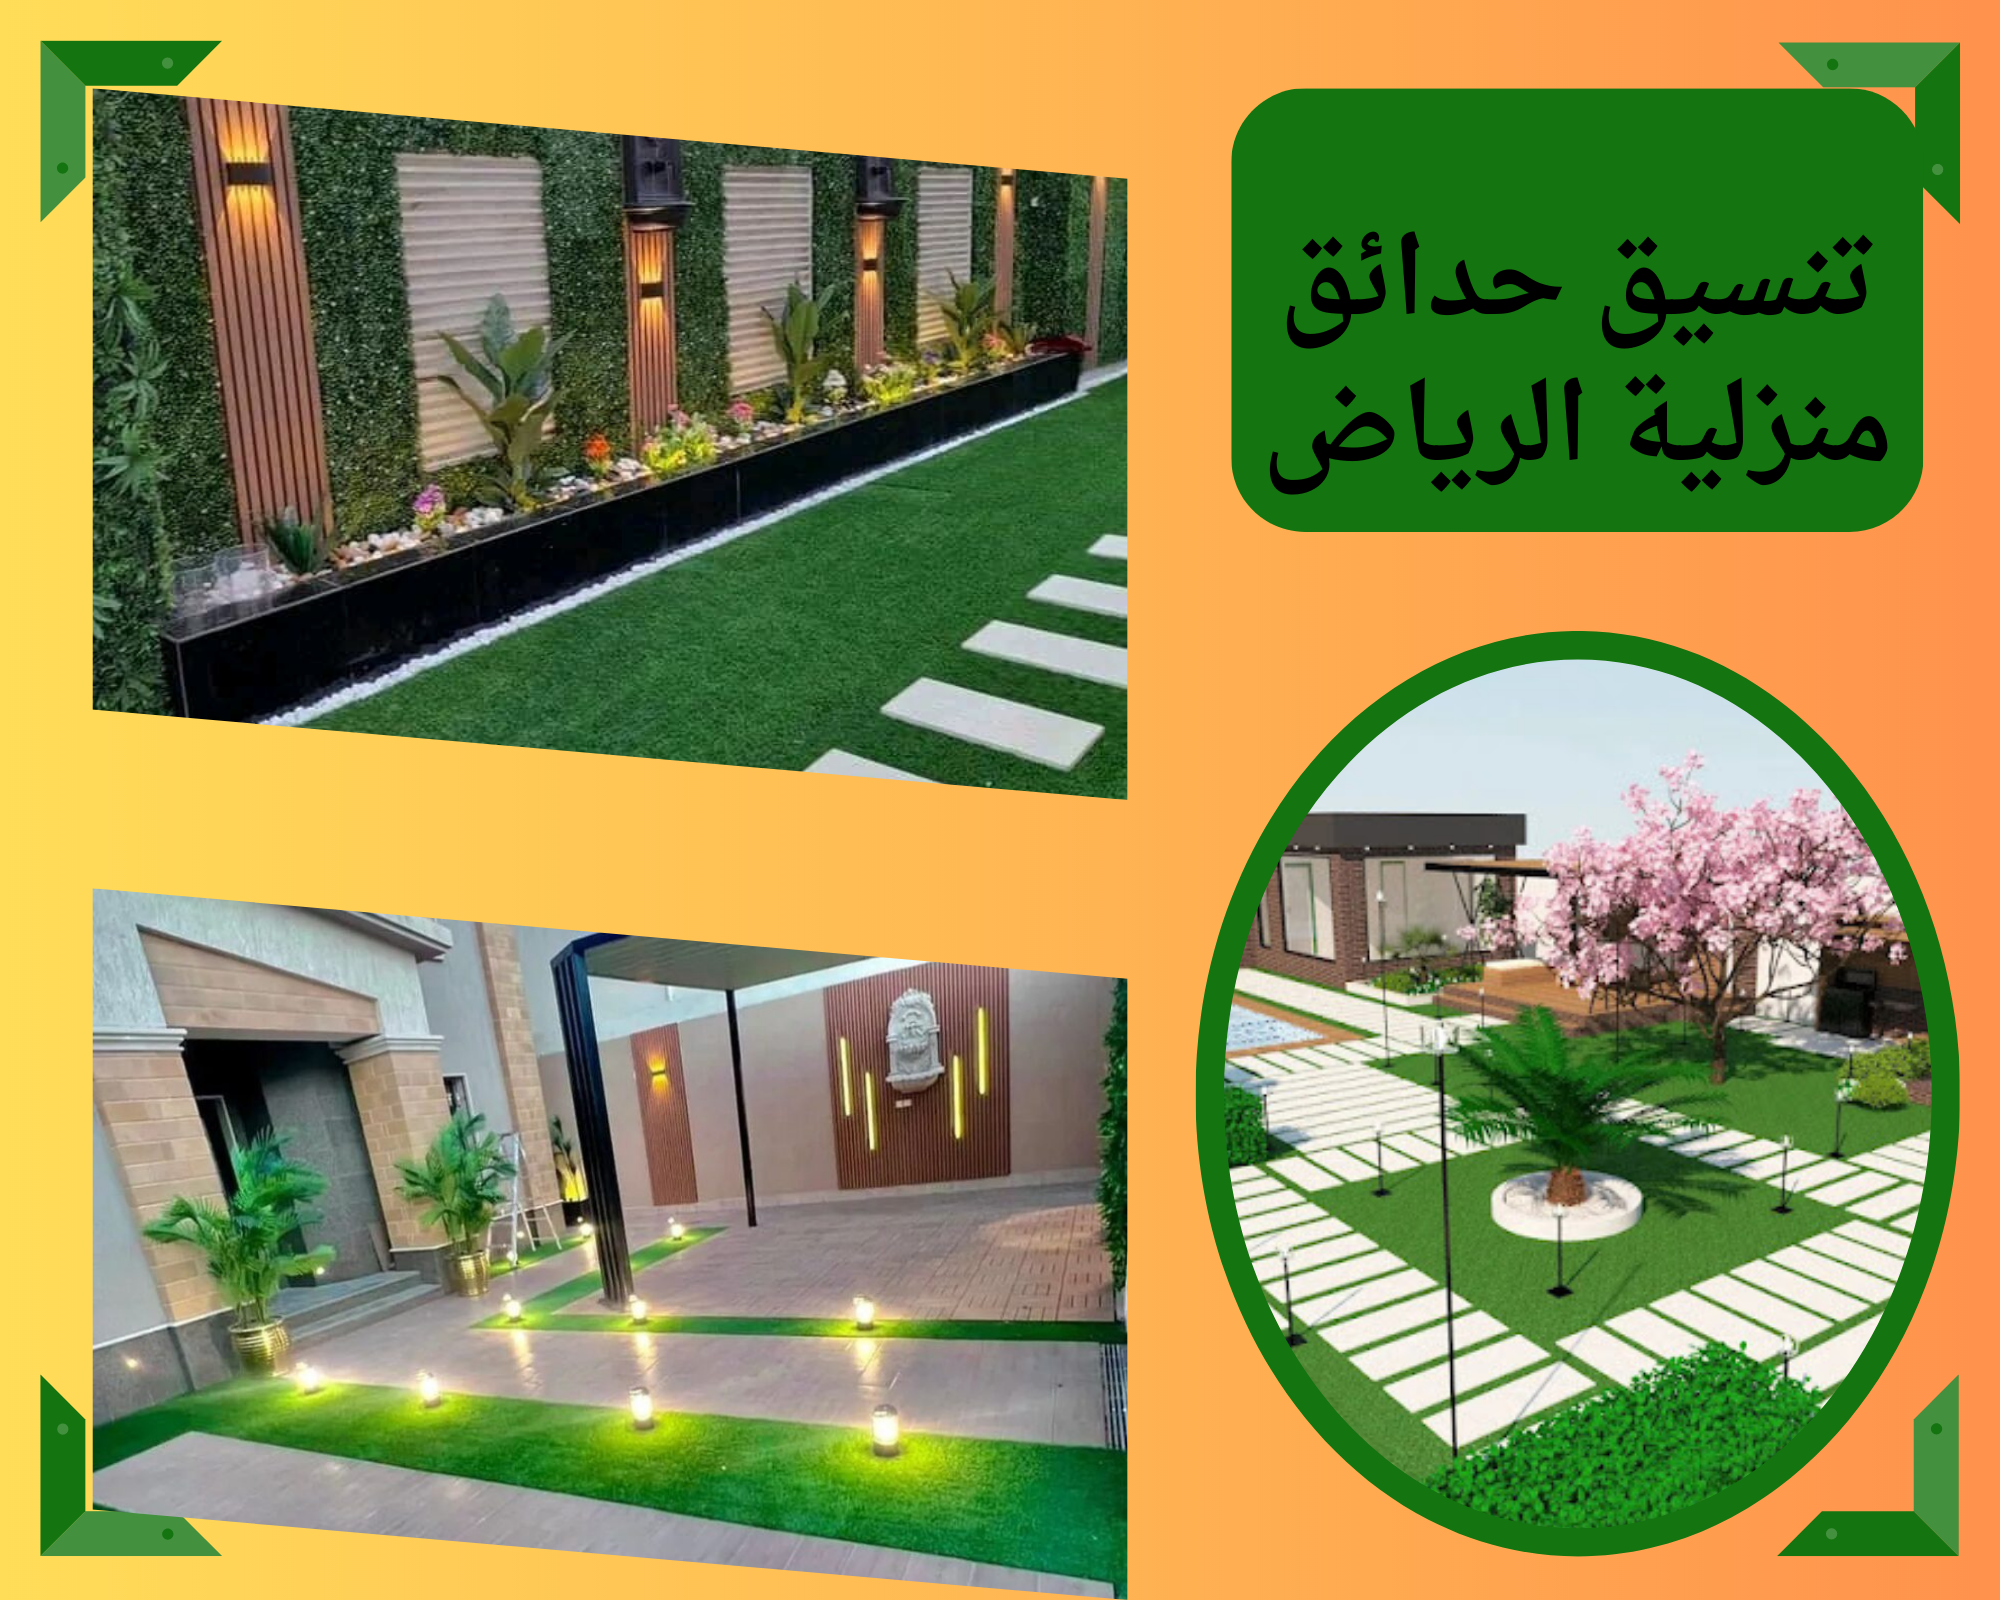 تنسيق حدائق خارجية في الرياض أحدث التصاميم والخدمات الاحترافية بالرياض